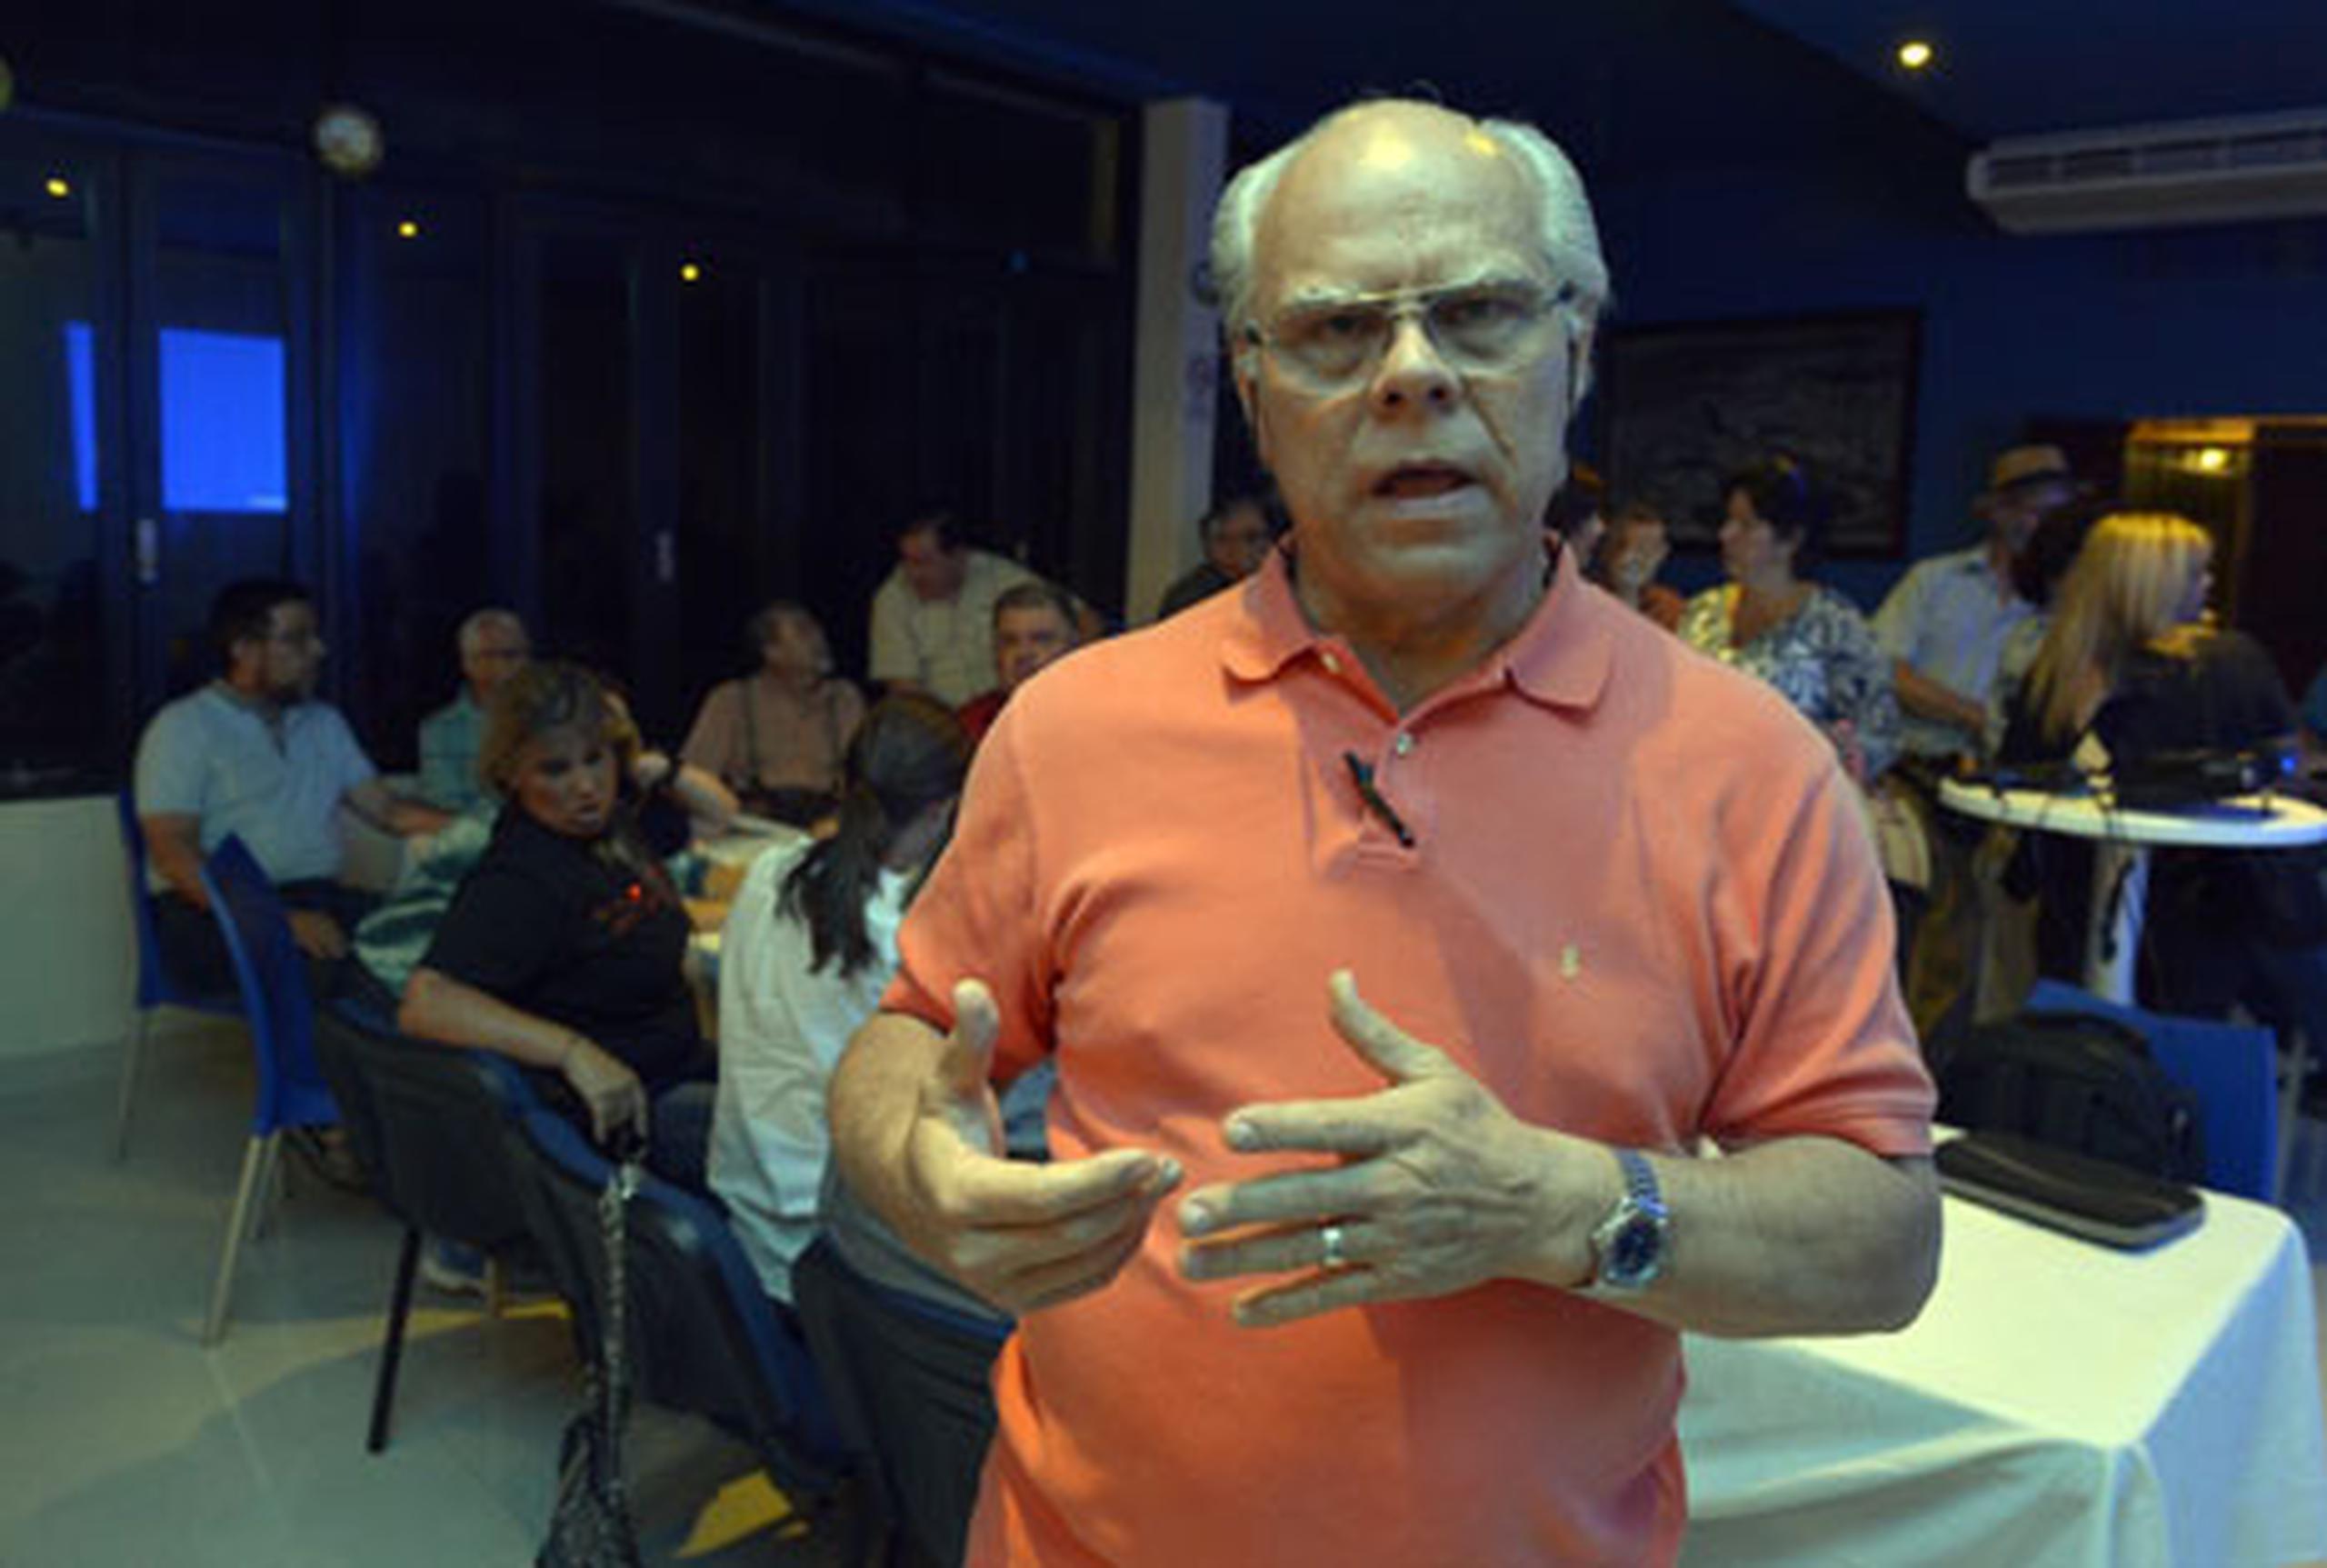 Luis Delgado, miembro de la organización no gubernamental (ONG) Ciudadanía Activa, exhortó hoy a sus paisanos en Puerto Rico a que se mantengan unidos. (ismael.fernandez@gfrmedia.com)